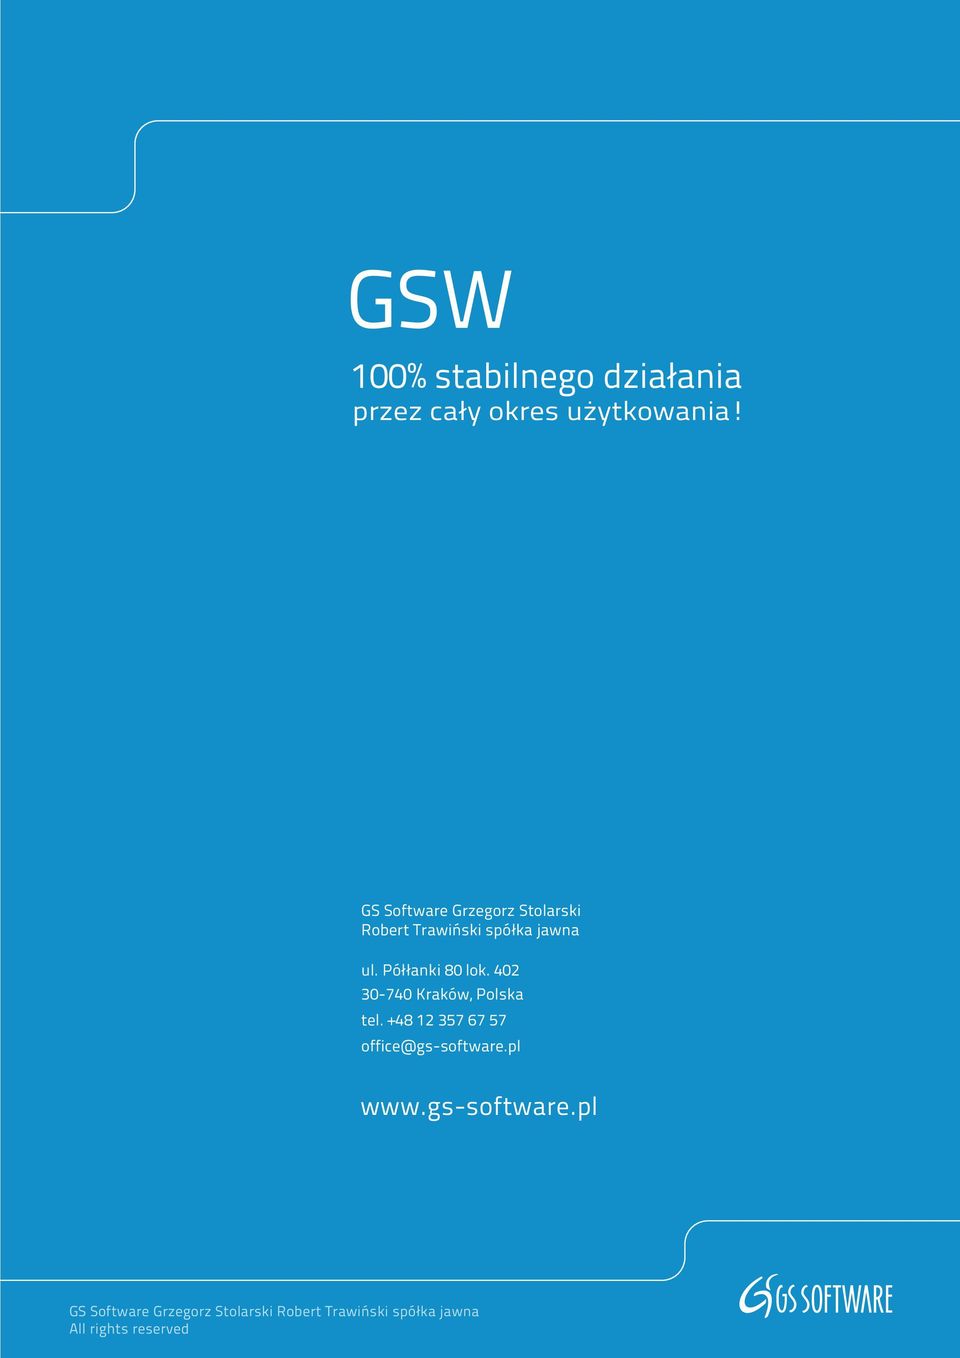 GS Software Grzegorz Stolarski Robert Trawiński spółka